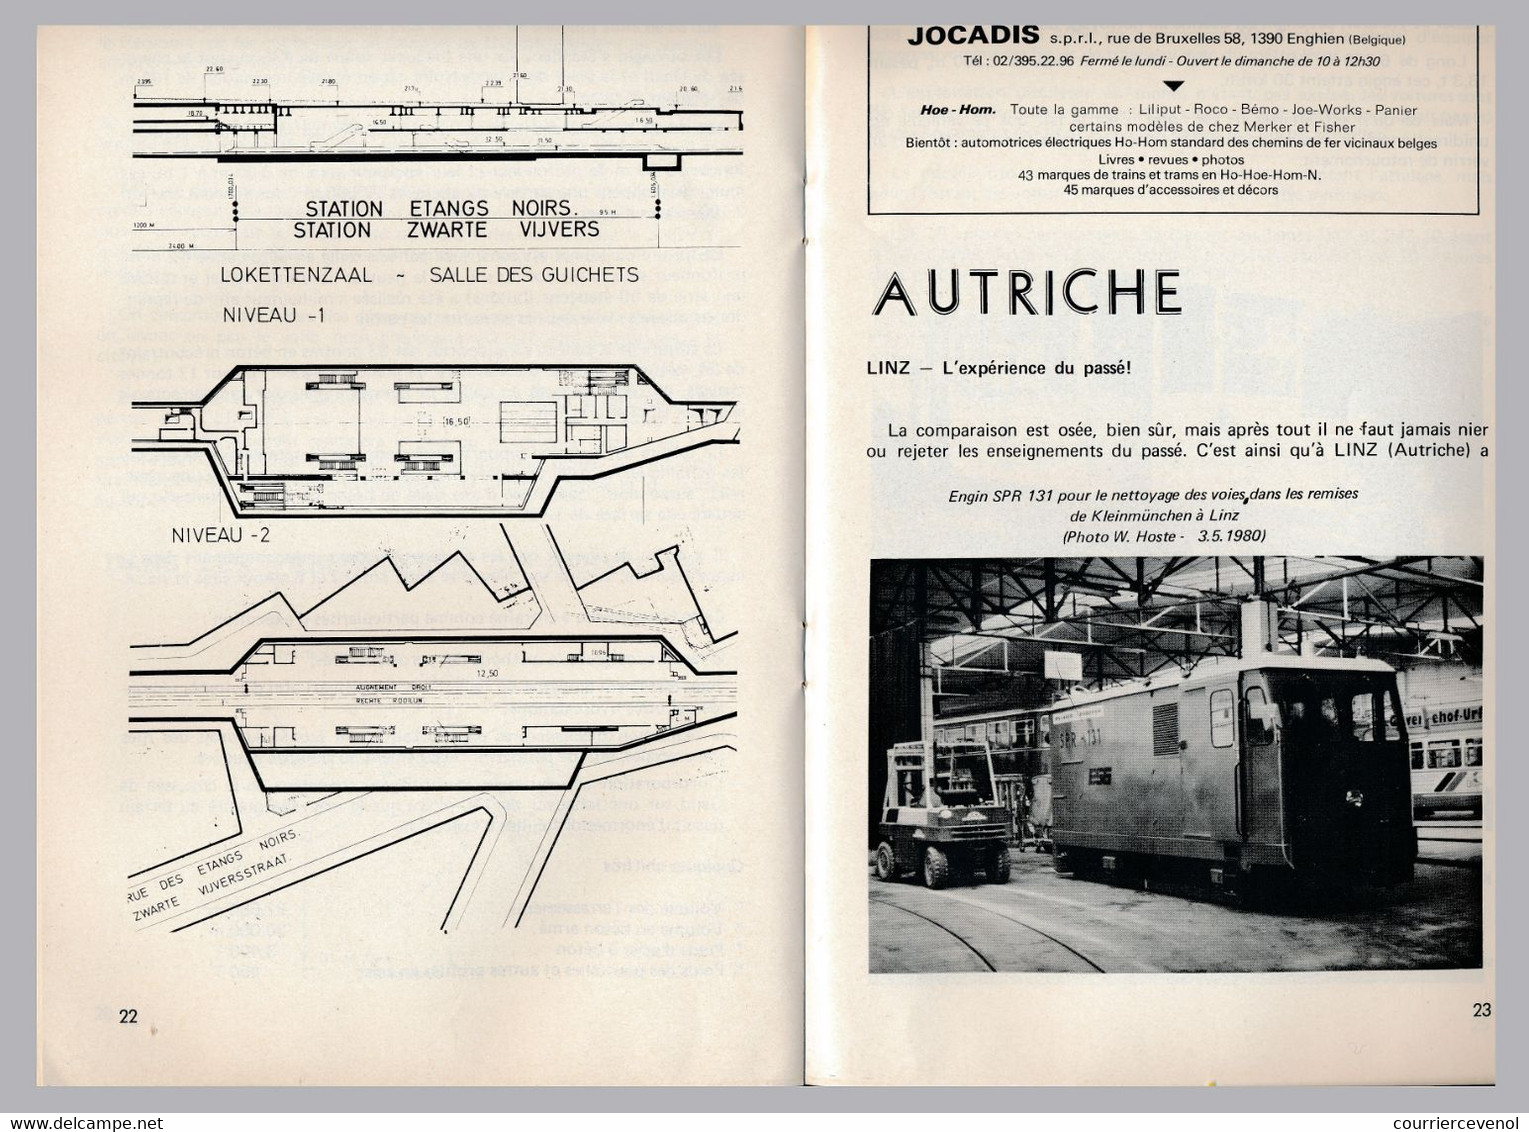 TRAM MAGAZINE n°17 à 20 - Bilingue Français / Néerlandais - 32 pages - 16 cm x 24 cm - Nombreuses illustrations